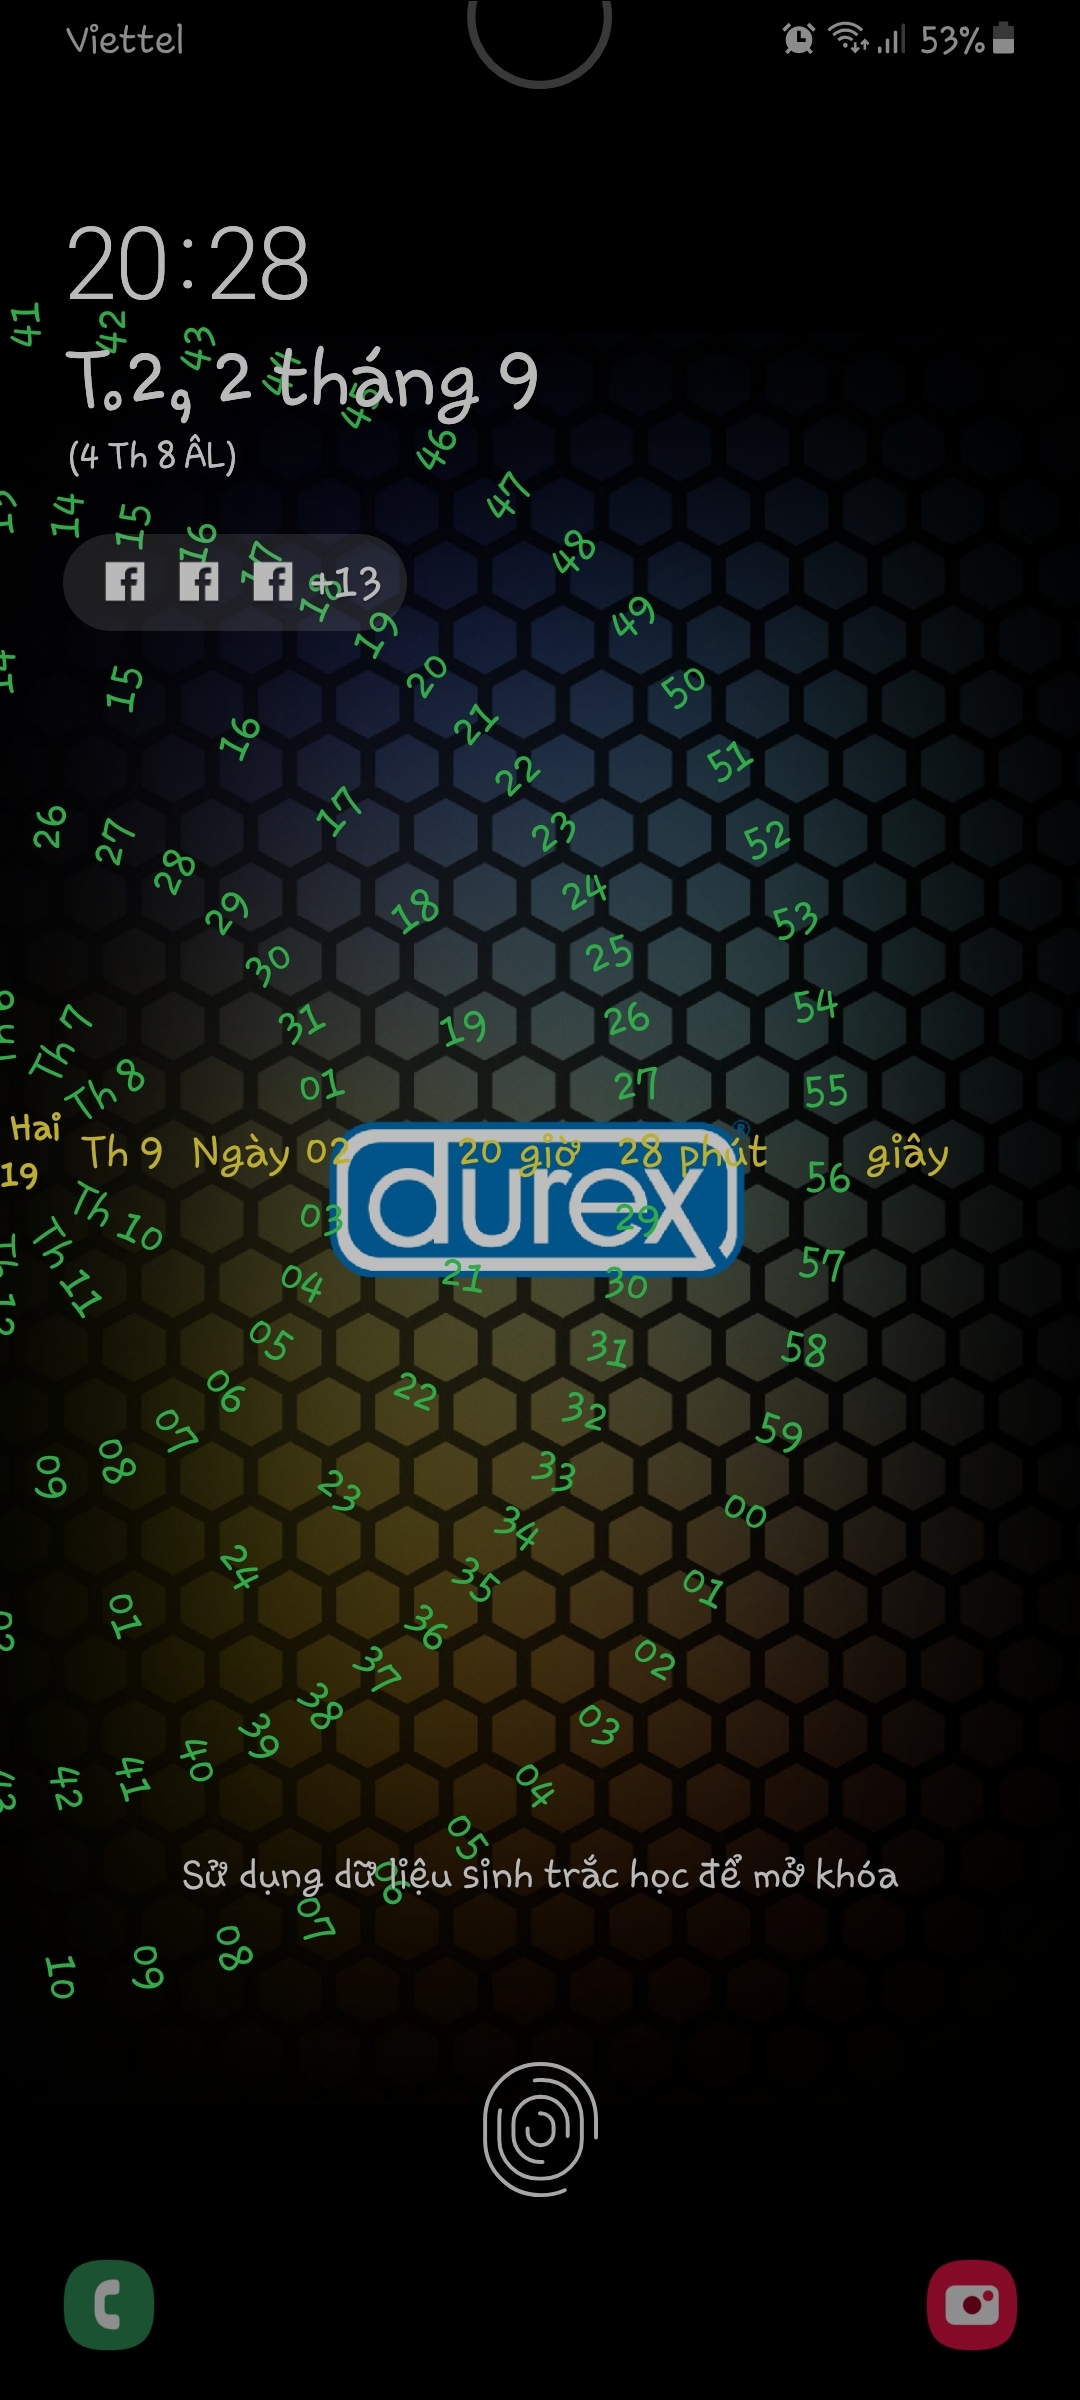 Phản ứng của cộng đồng mạng với những bất cẩn của Durex